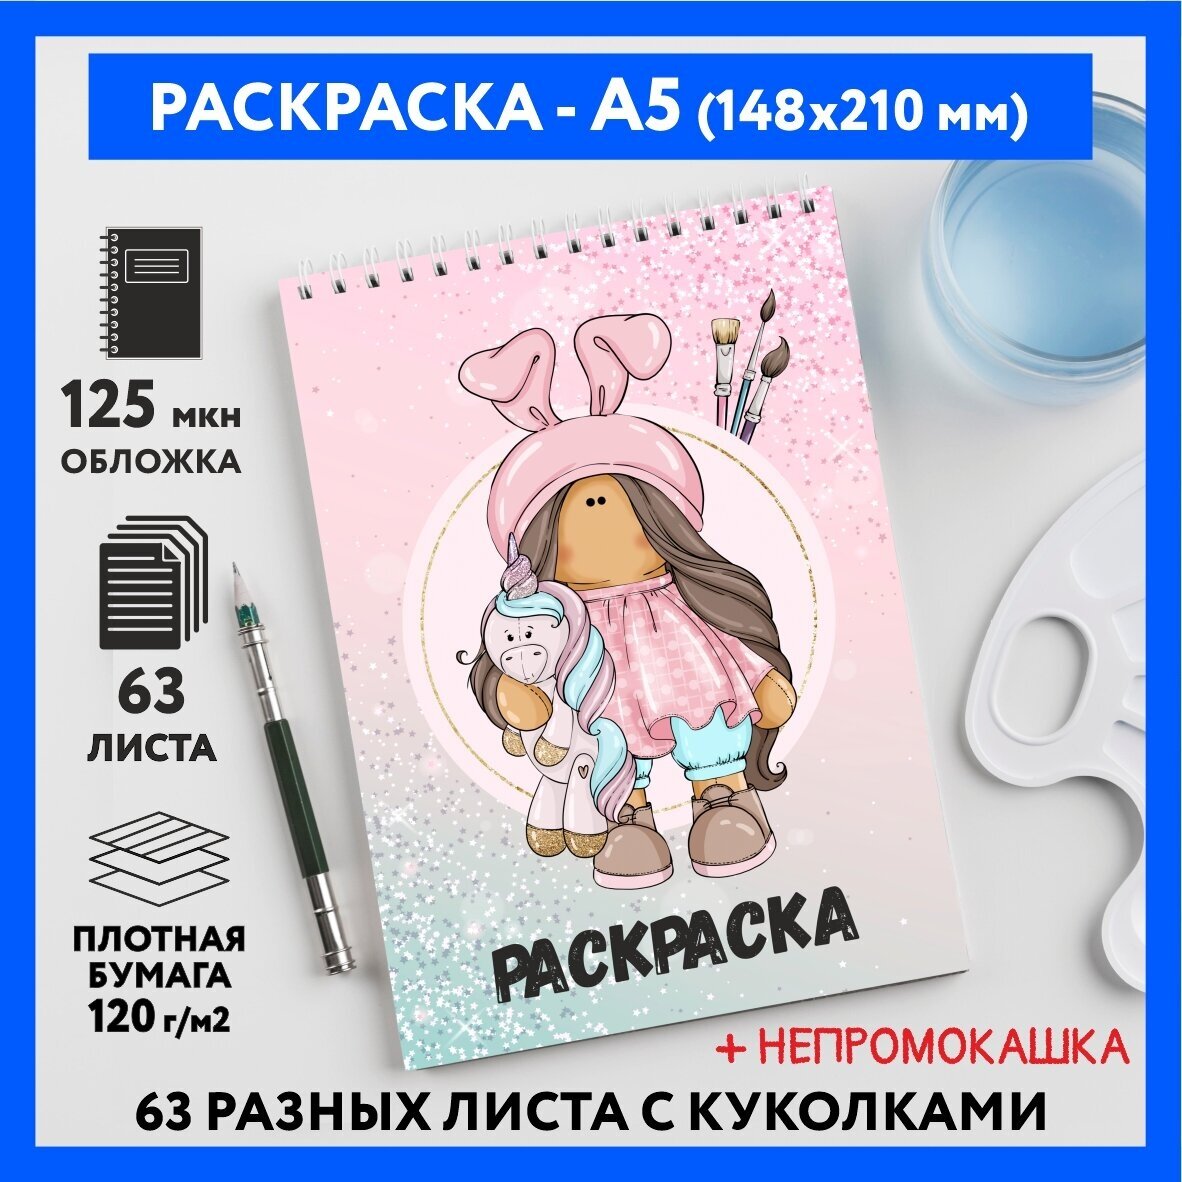 Раскраска для детей/ девочек А5, 63 разных куколки, бумага 120 г/м2, Вязаная куколка #111 - №43, coloring_book_knitted_dolls_#111_A5_43